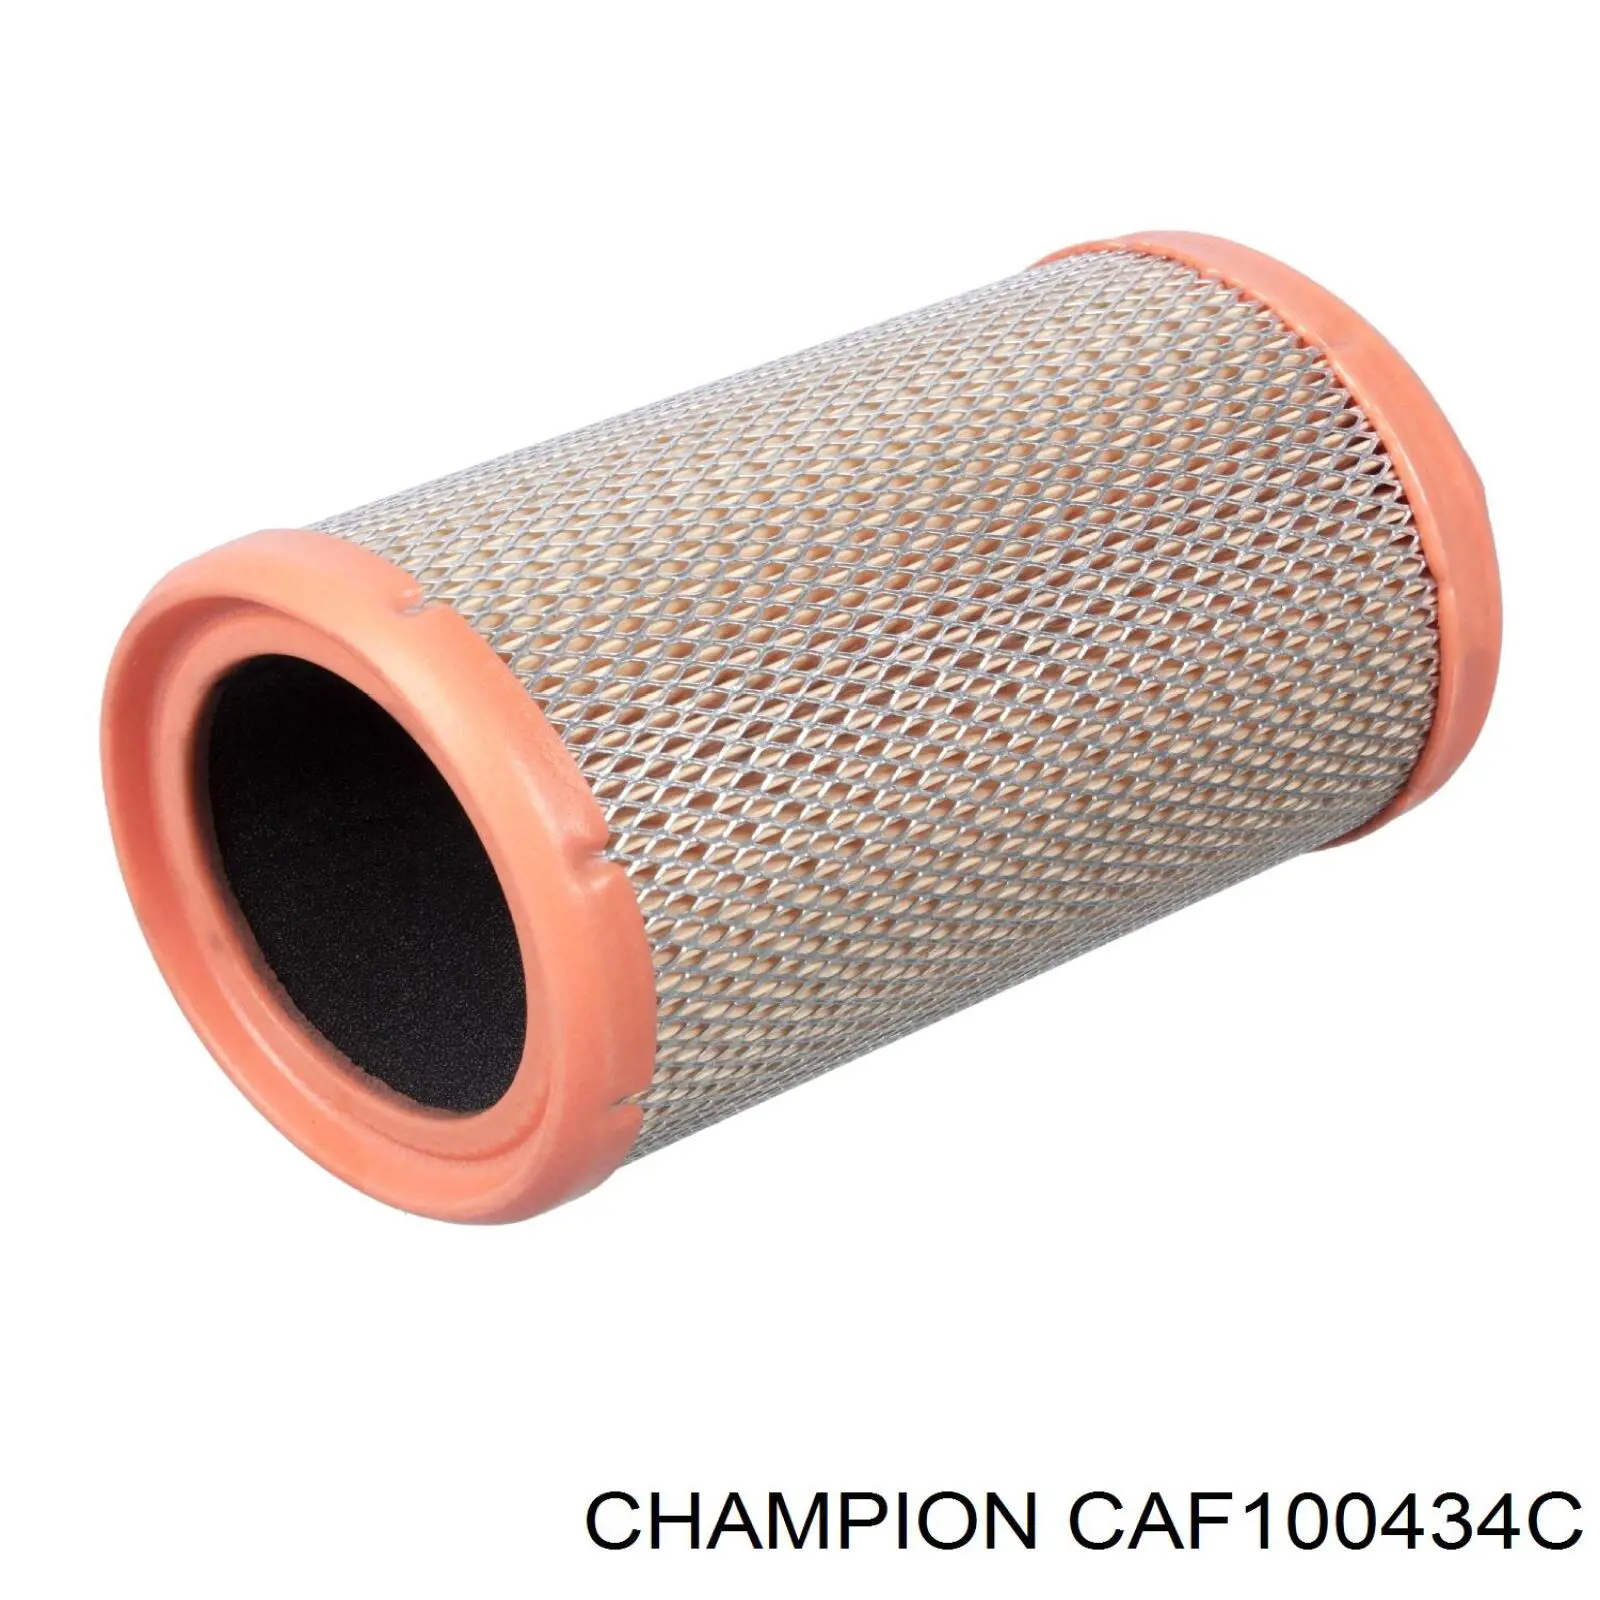 CAF100434C Champion filtro de aire